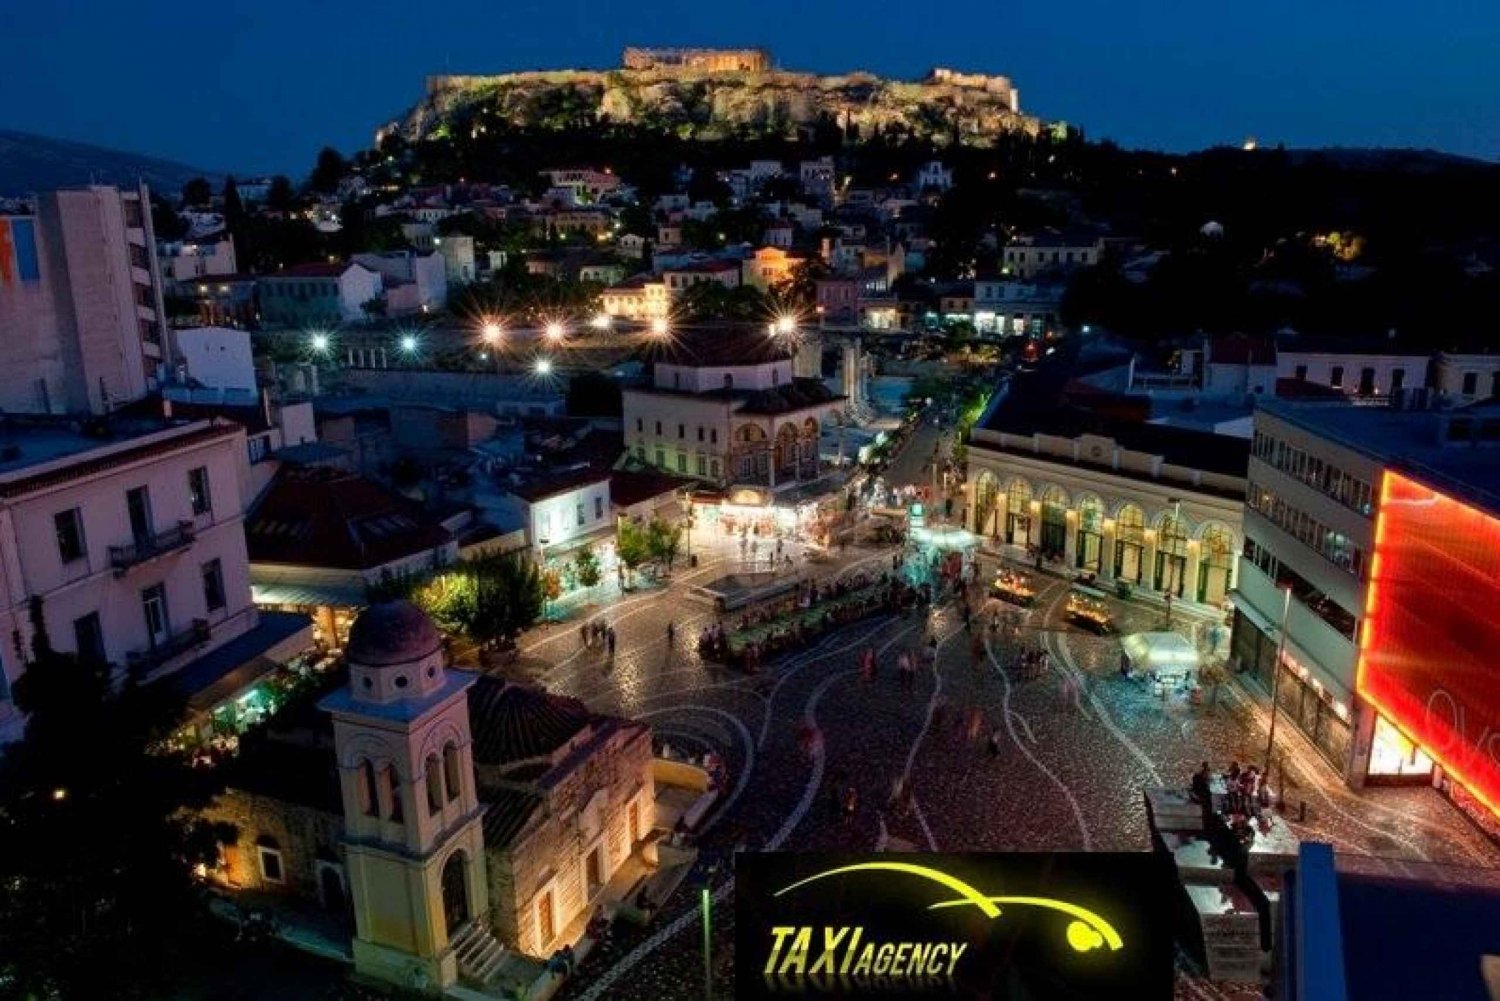 Athen: Transfer til/fra Athens lufthavn og Athens hoteller: Transfer til/fra Athens lufthavn og Athens hoteller